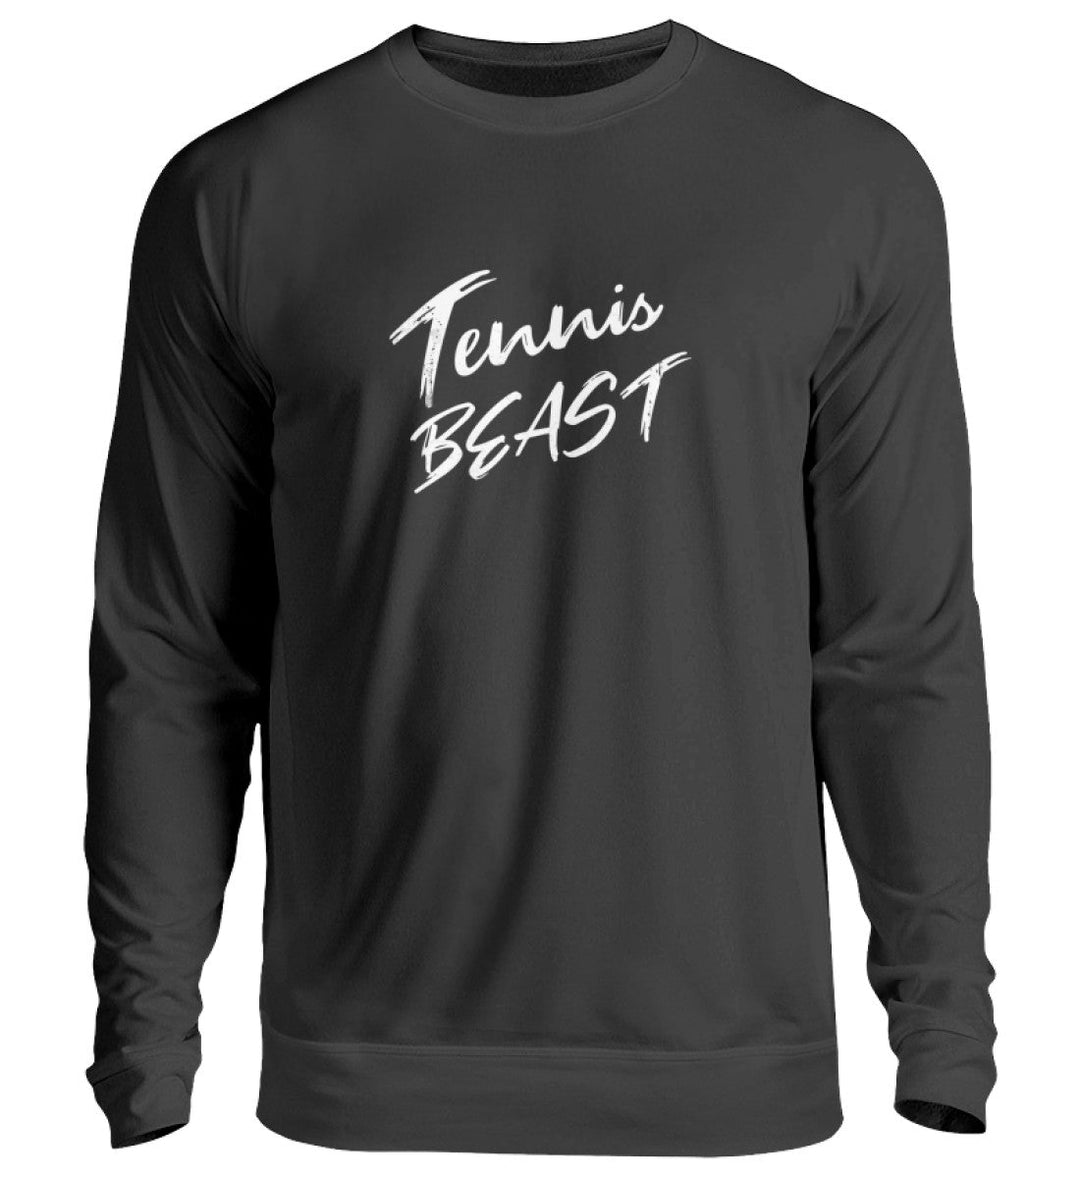 Tennis beast | Sweatshirt (Unisex) - Matchpoint24 - Kleidung für Tennisfans